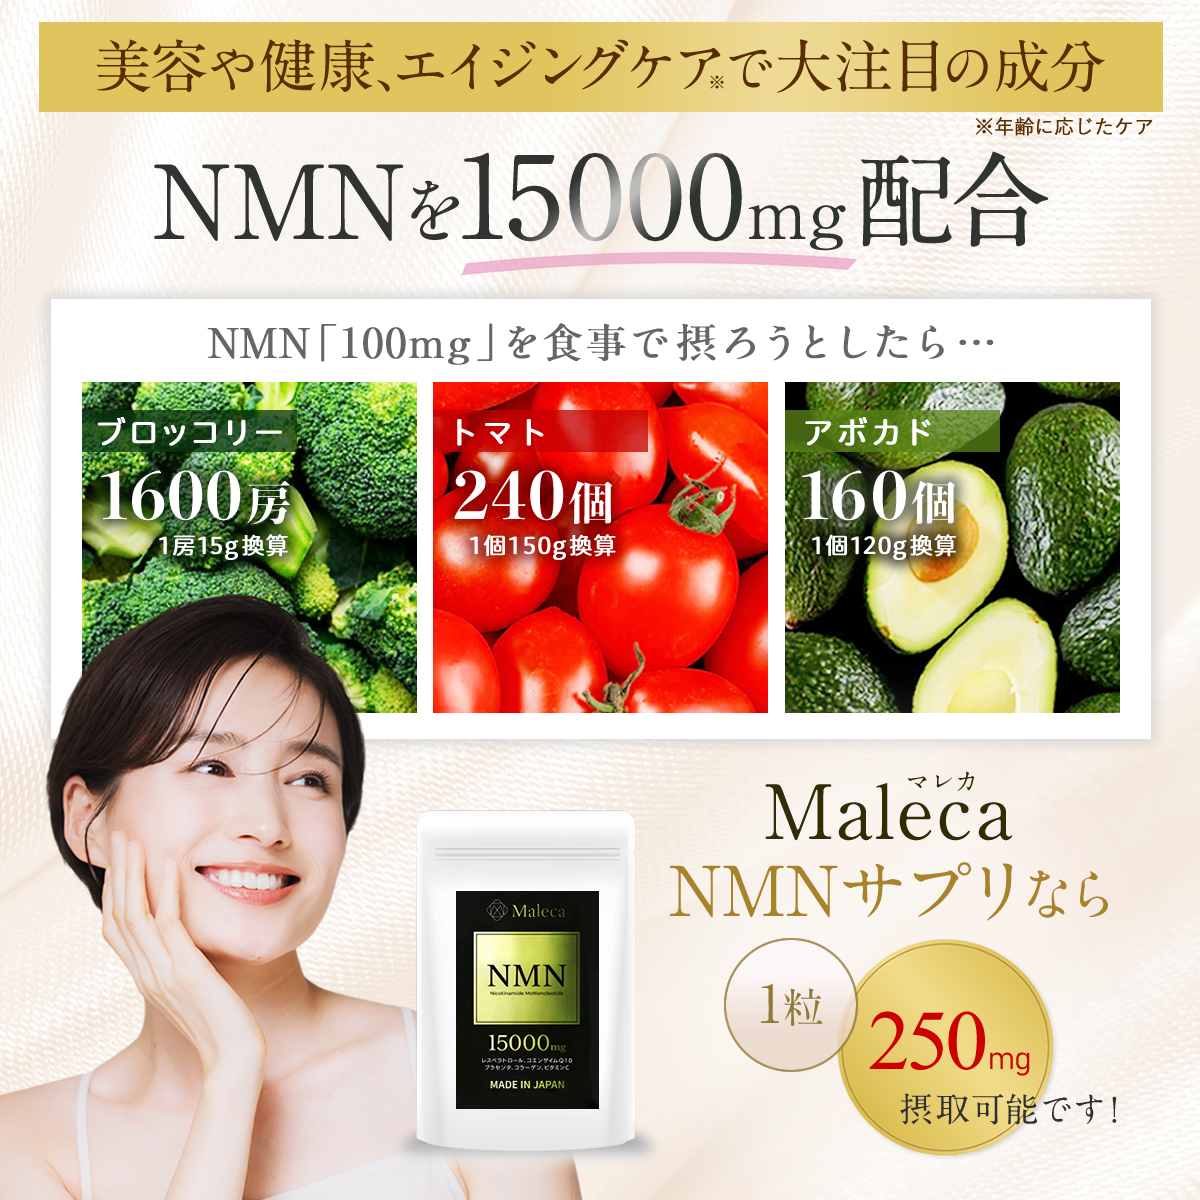 NMN 15000㎎ 日本製 プラセンタ レスベラトロール コエンザイム コラーゲン配合 30日分 60カプセル 純度99%以上 国内GMP認定 サプリメント_画像1